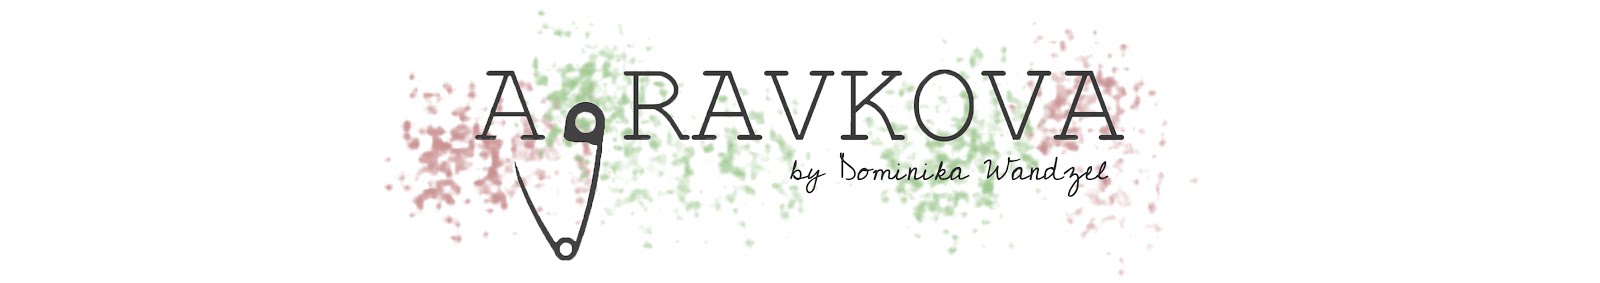 AGRAVKOVA- Kreatywny blog